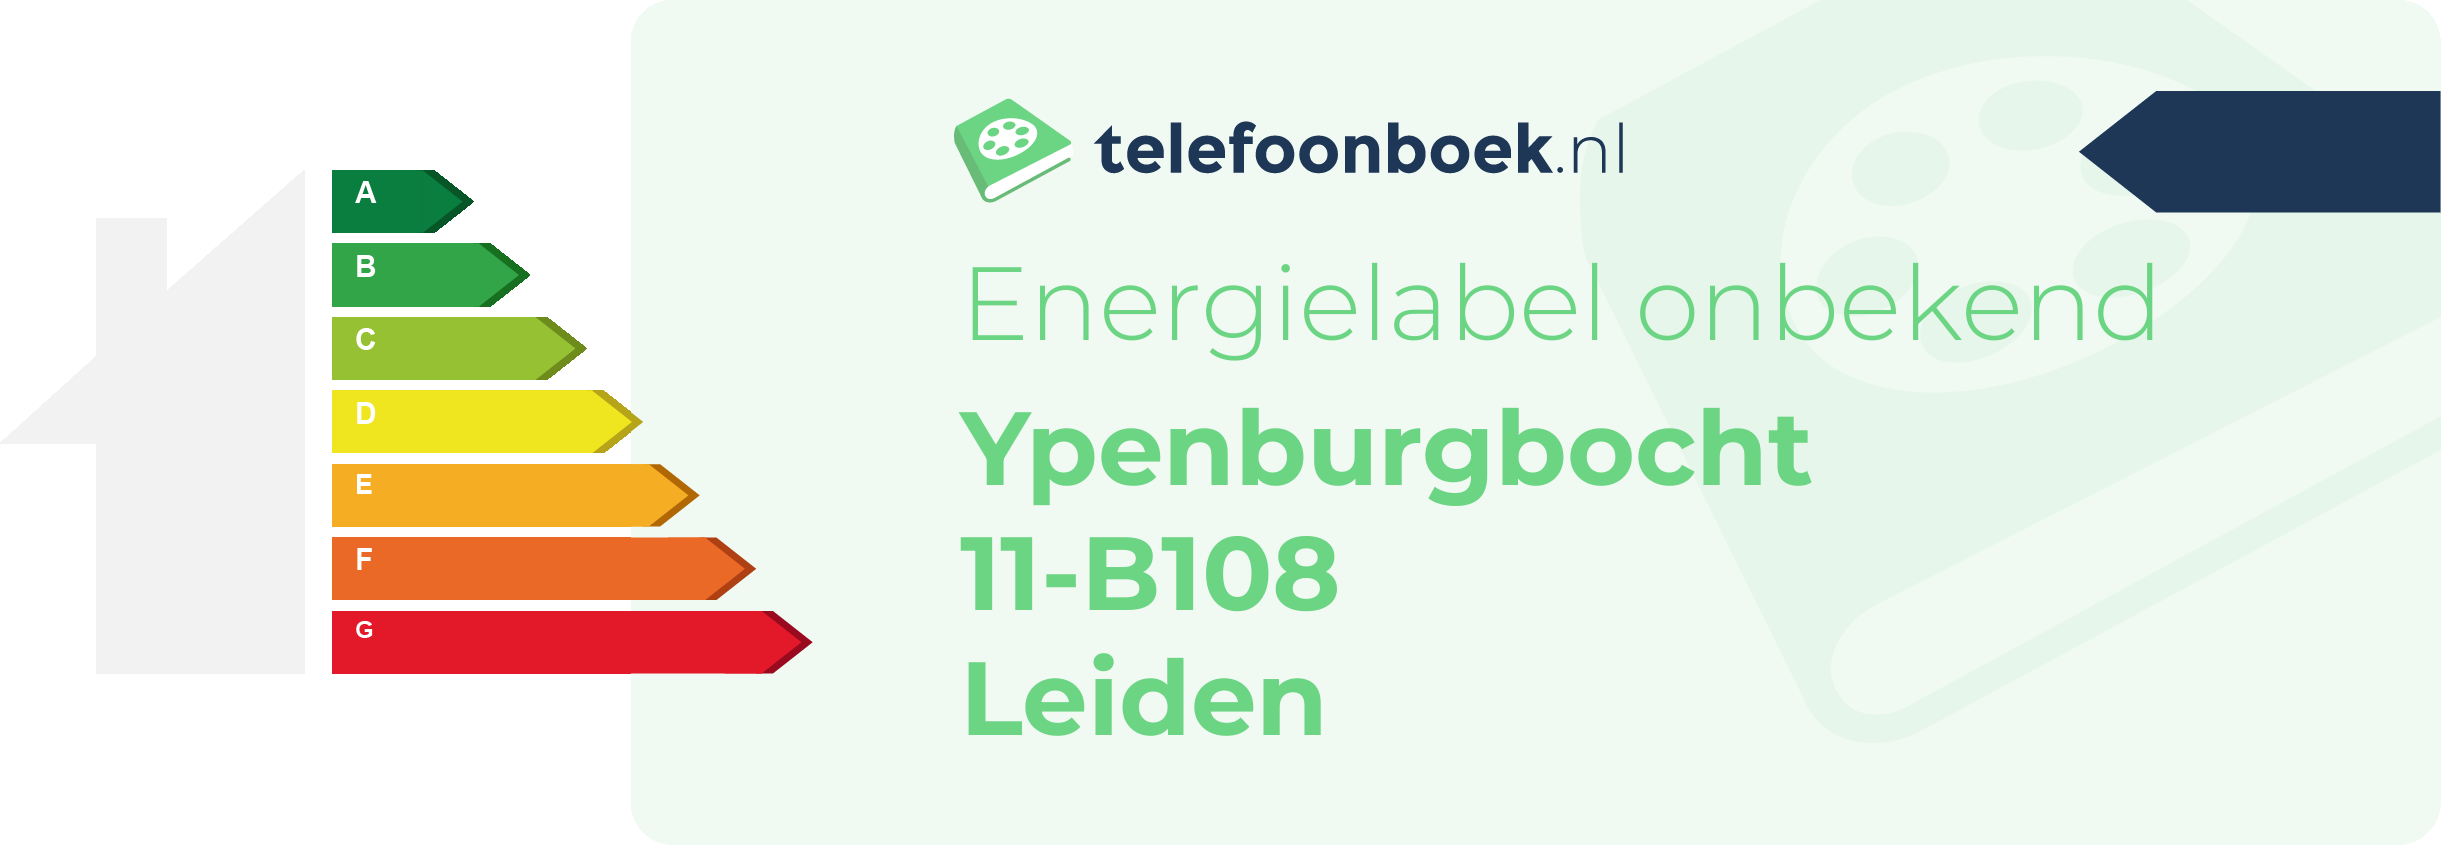 Energielabel Ypenburgbocht 11-B108 Leiden